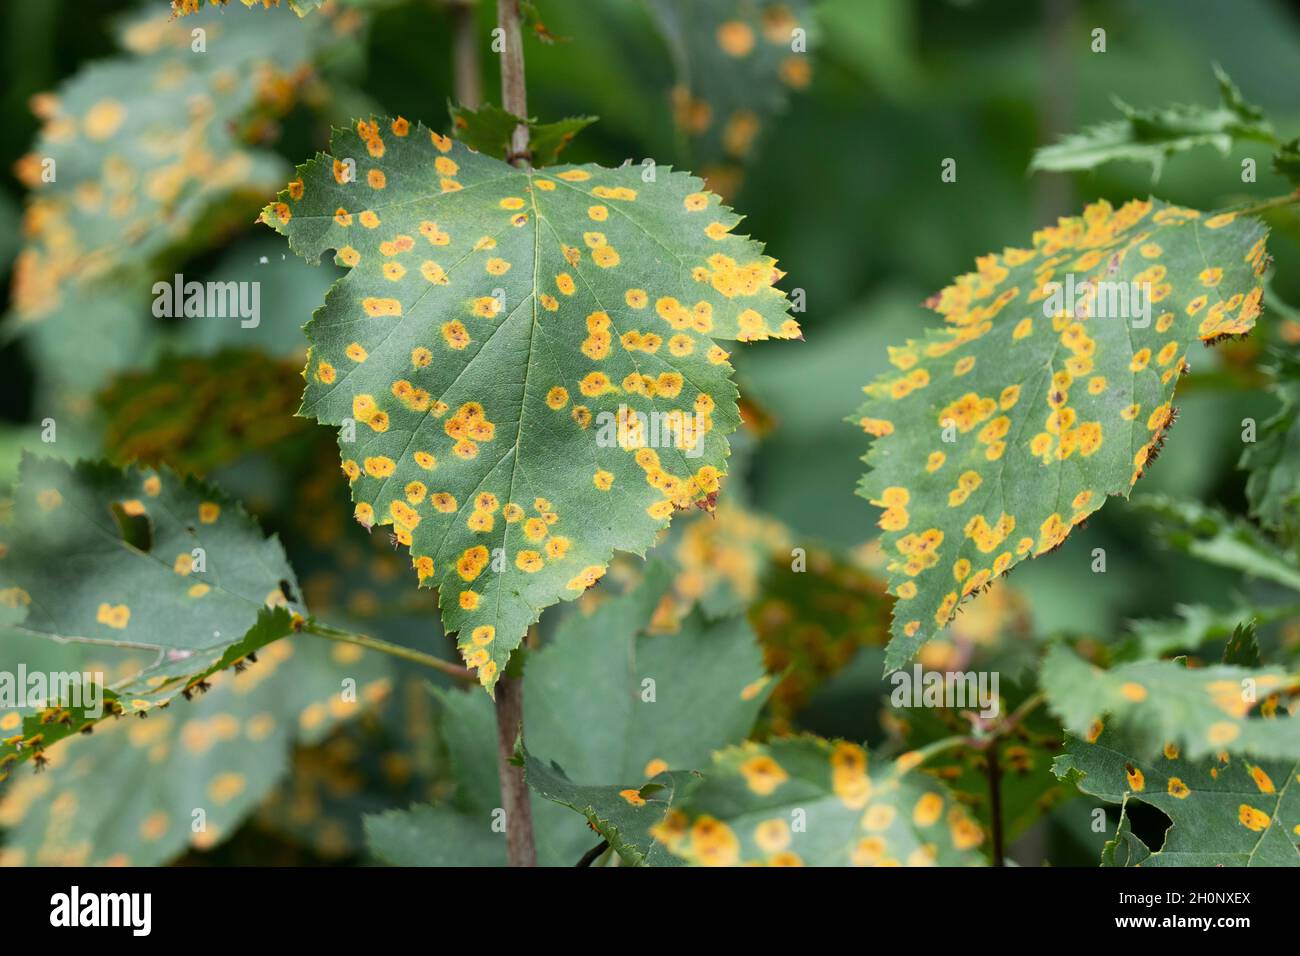 Malattia della ruggine del biancospino, foglie infettate con Rust Fungus (Gymnosporangium globosum) Foto Stock